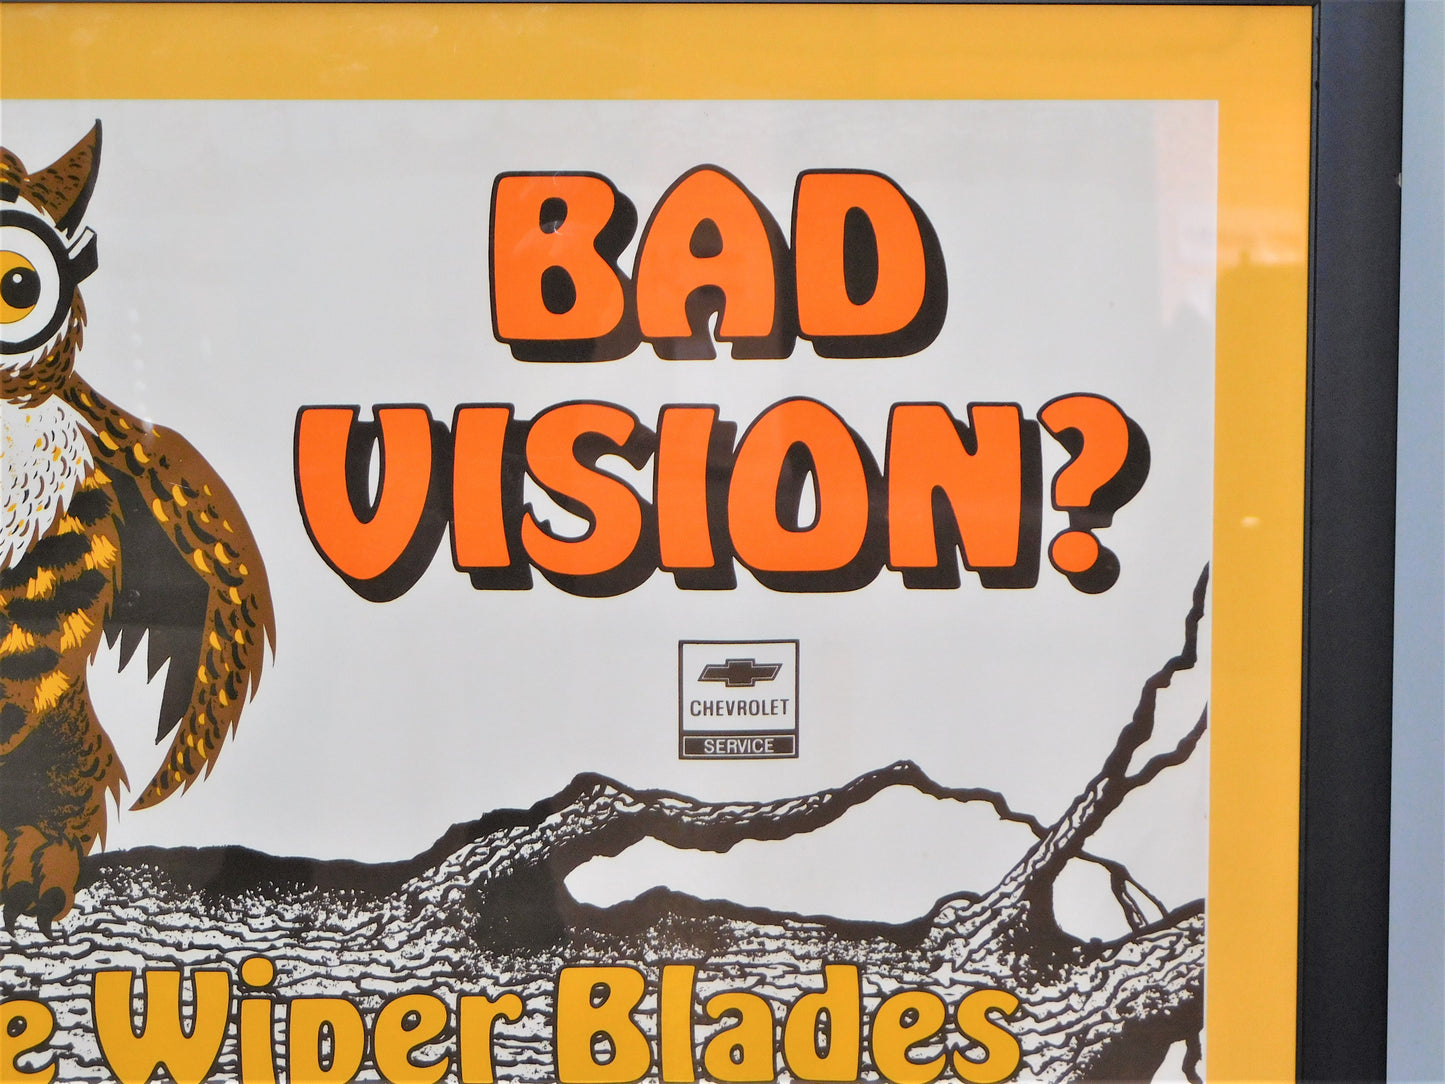 Chevrolet Service "Bad Vision?" Framed Poster